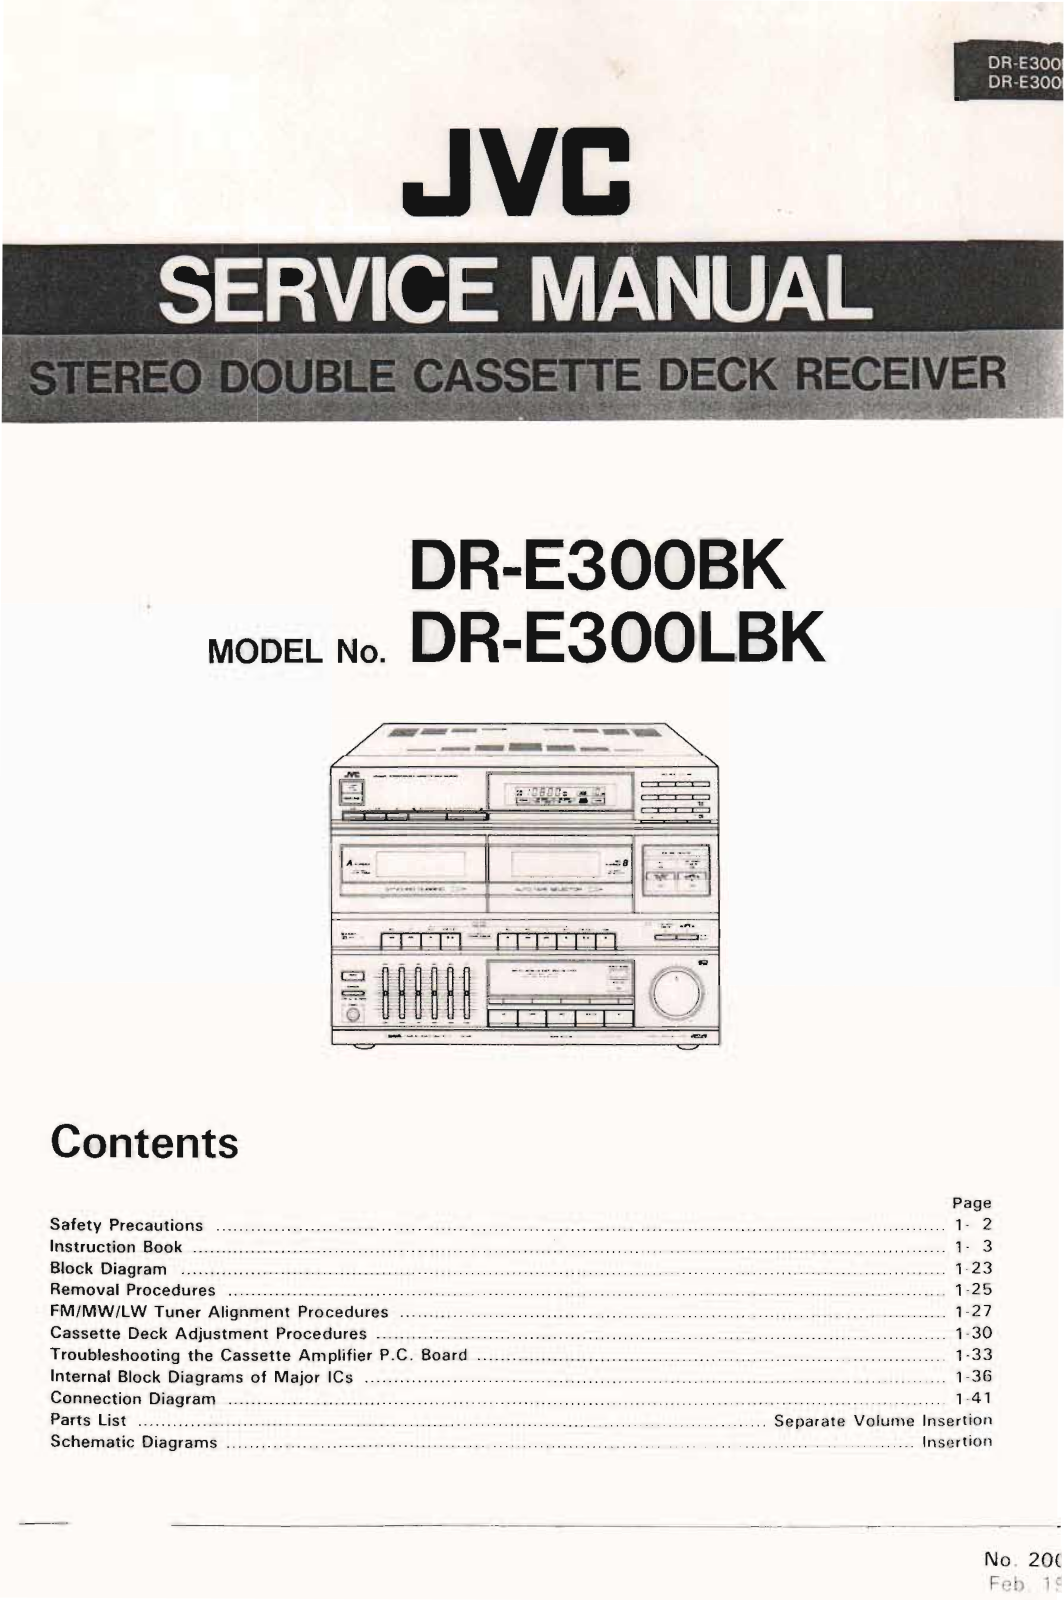 Jvc DR-E300-BK Service Manual